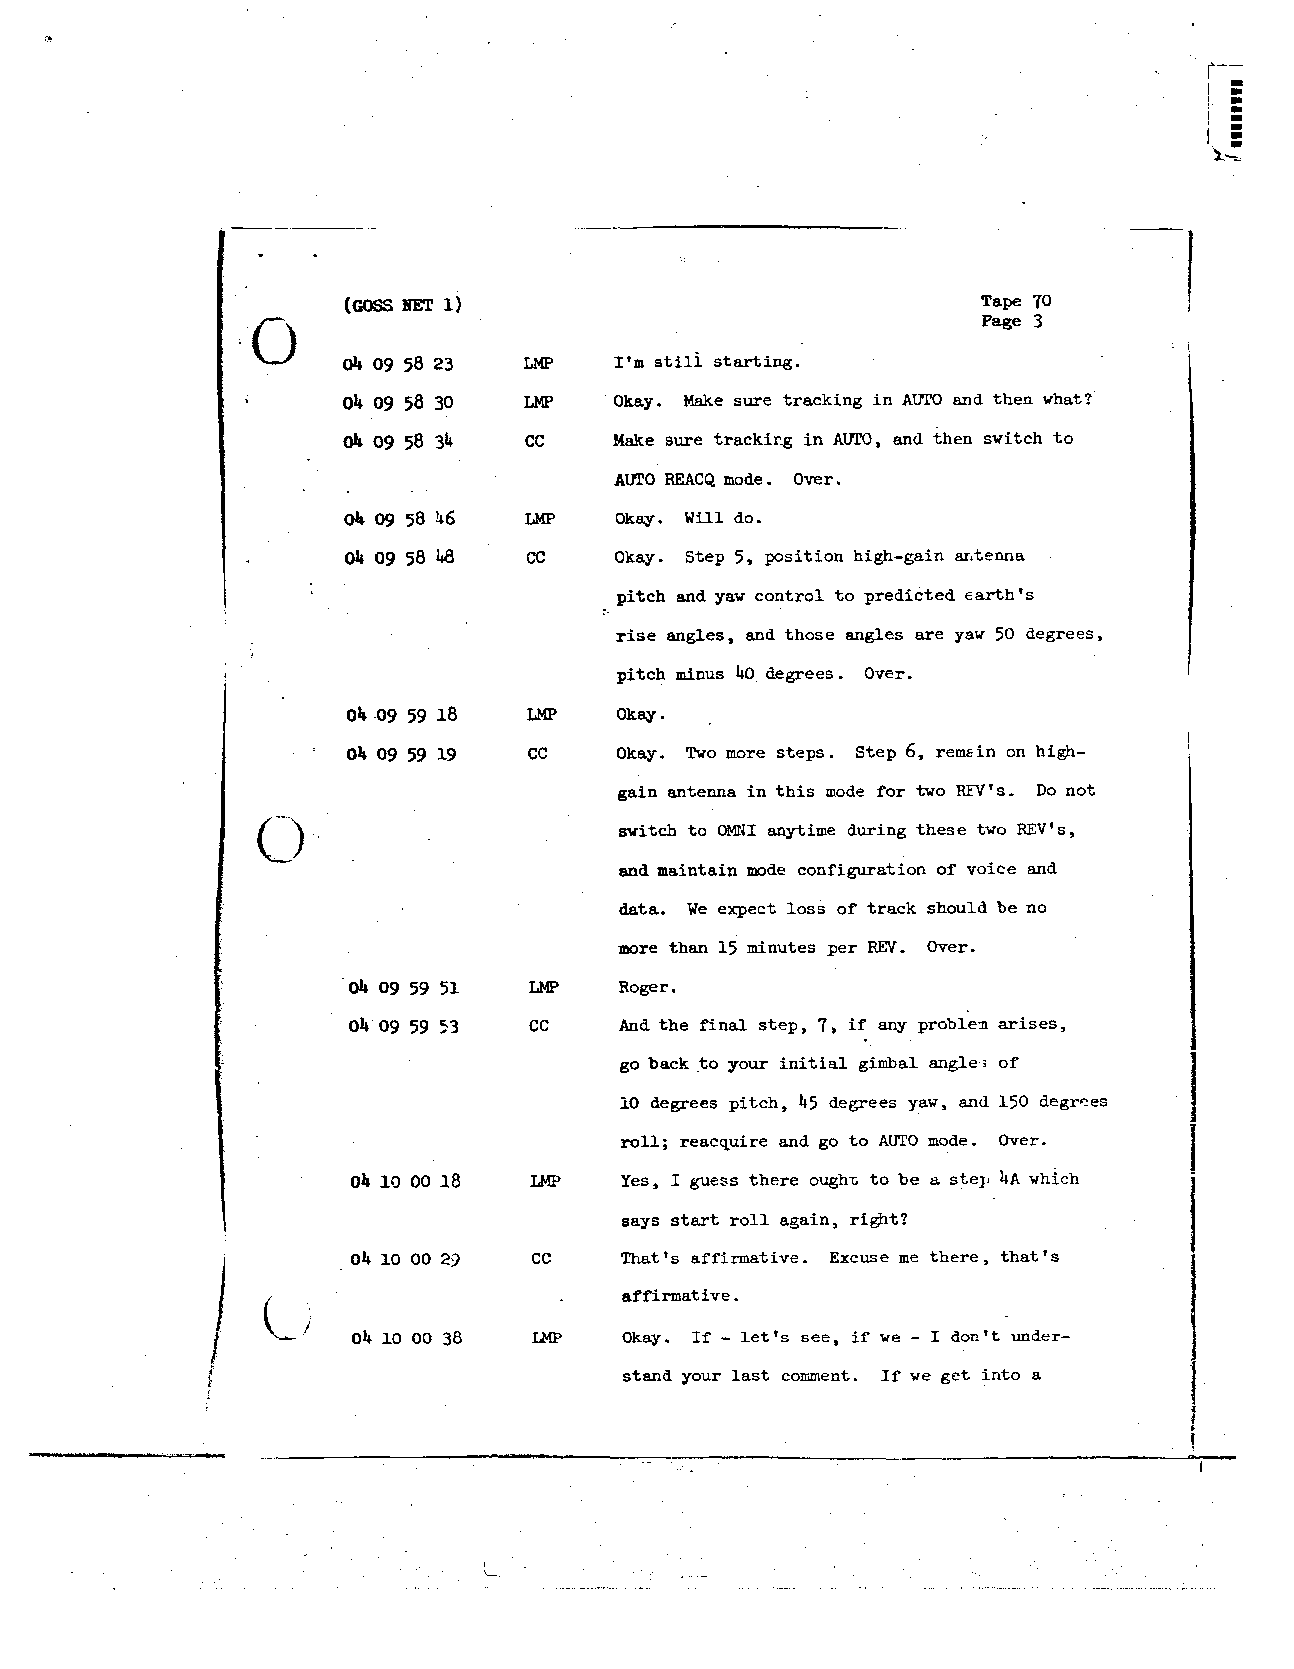 Page 561 of Apollo 8’s original transcript